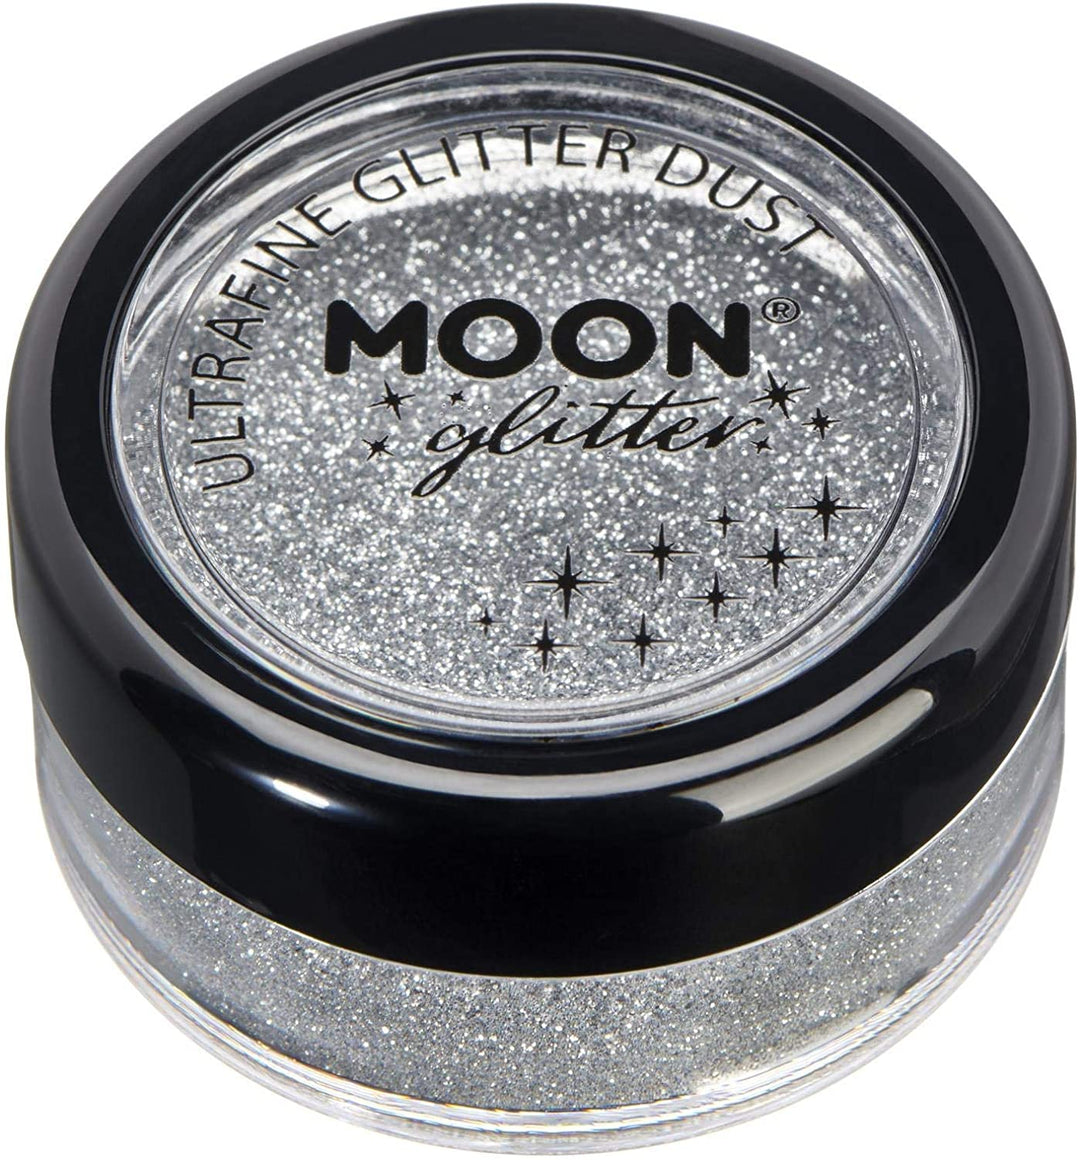 Polvere glitter ultrafine classica di Moon Glitter Silver Cosmetic Festival Make